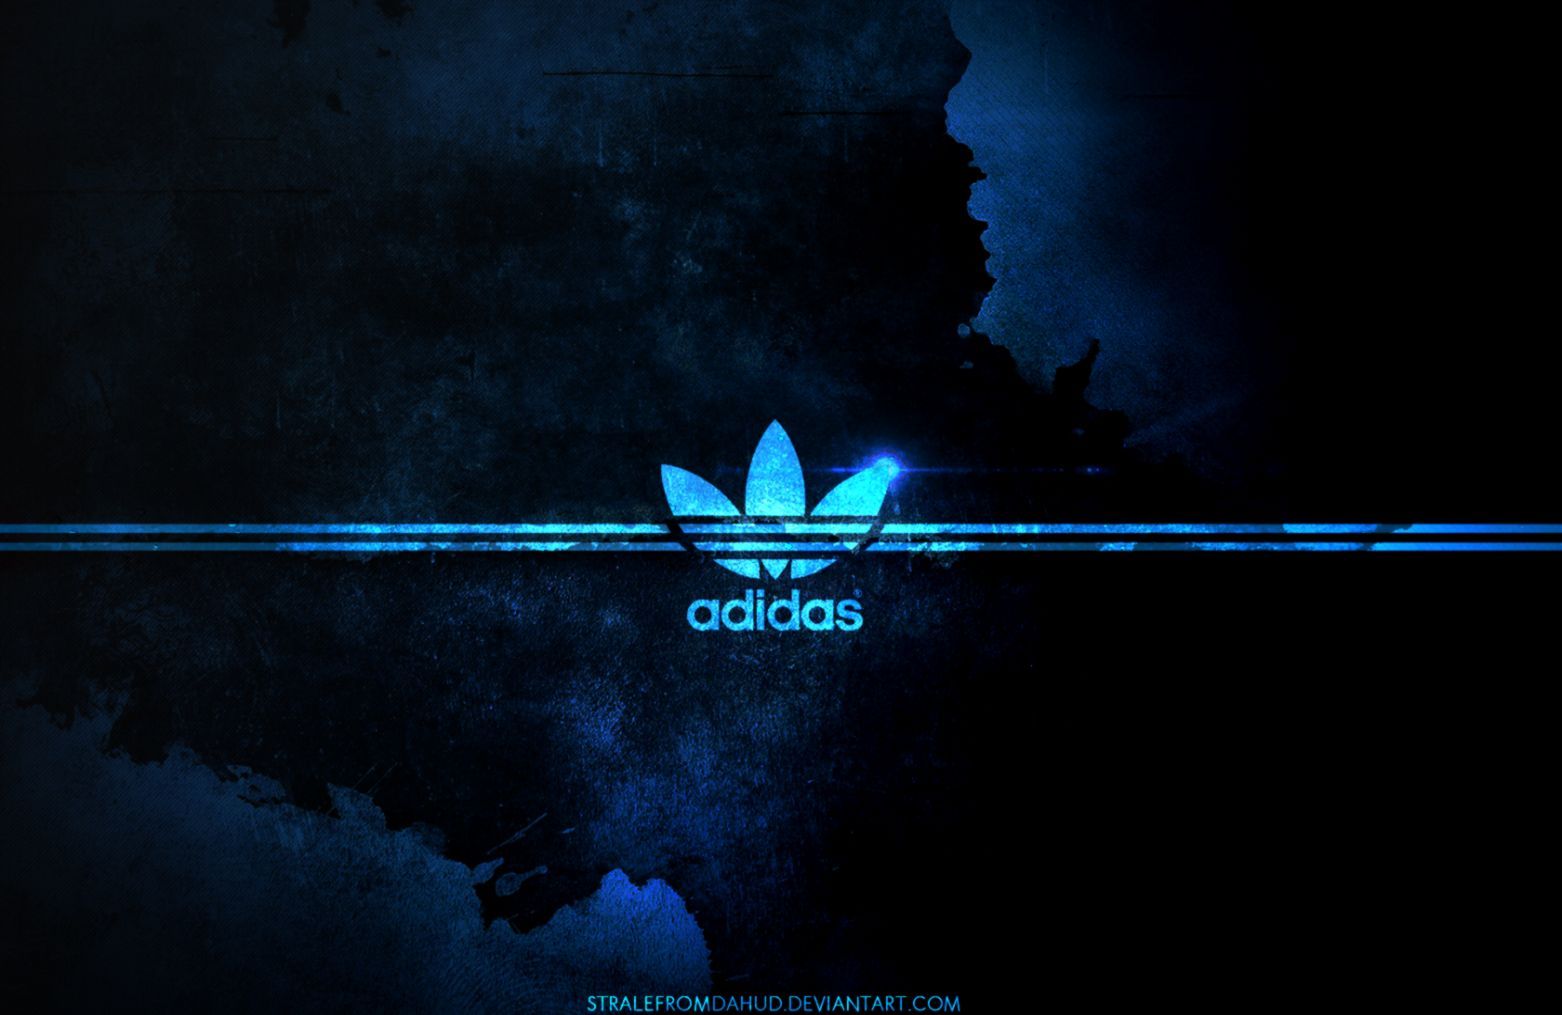 Adidas Football Free Wallpaper Hd Descargas | Colección de fondos de pantalla